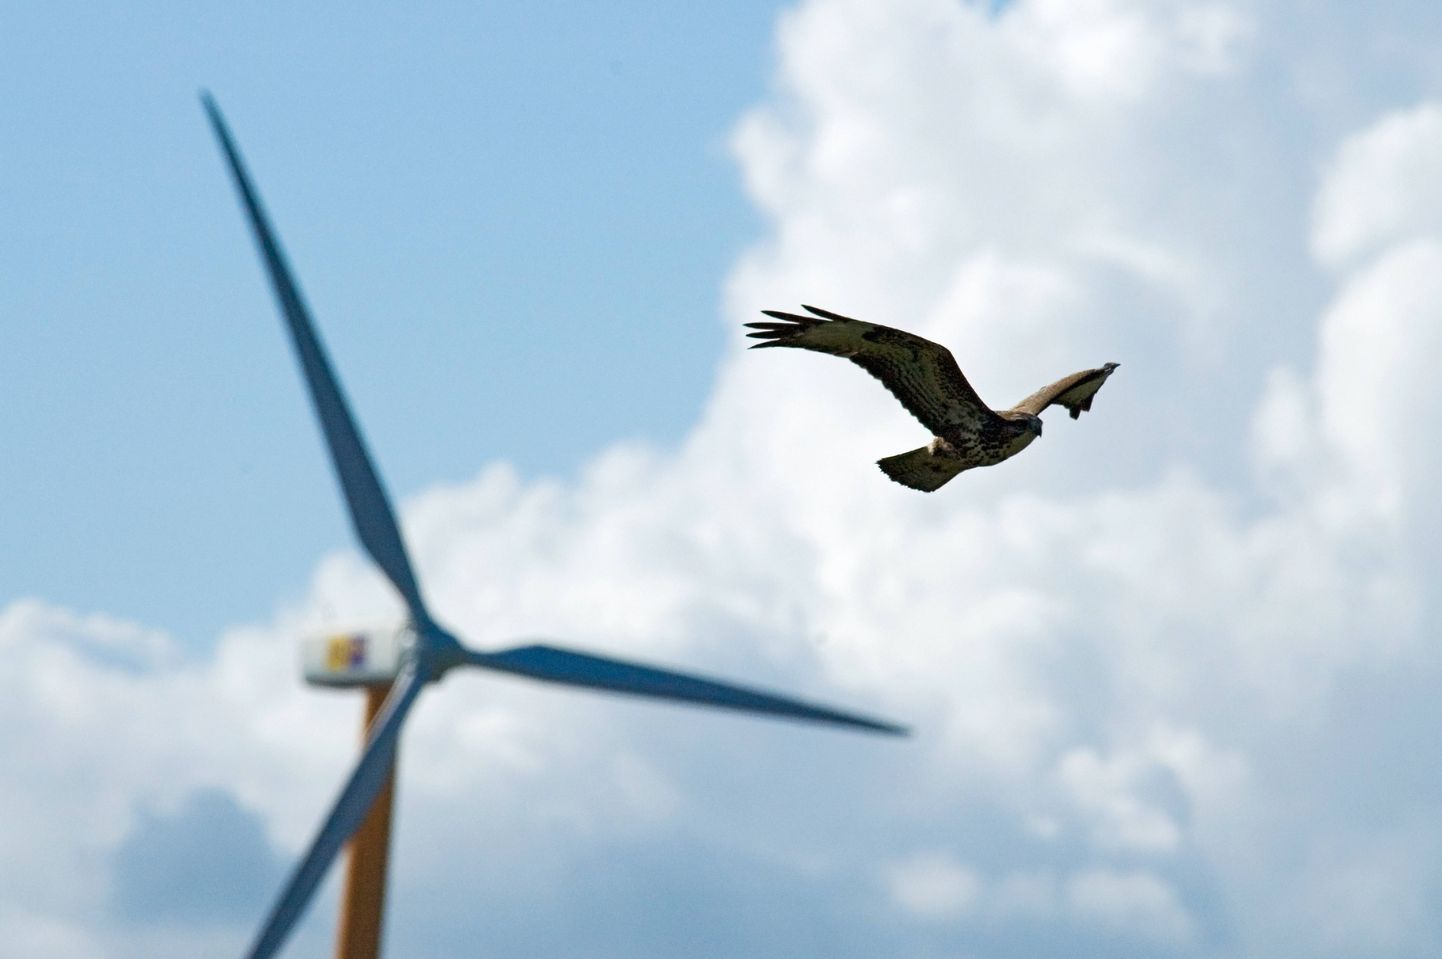 Lindude hukkumist tuuleparkides on üritatud vähendada, kuid väga tõhusat lahendust ei ole seni leitud.